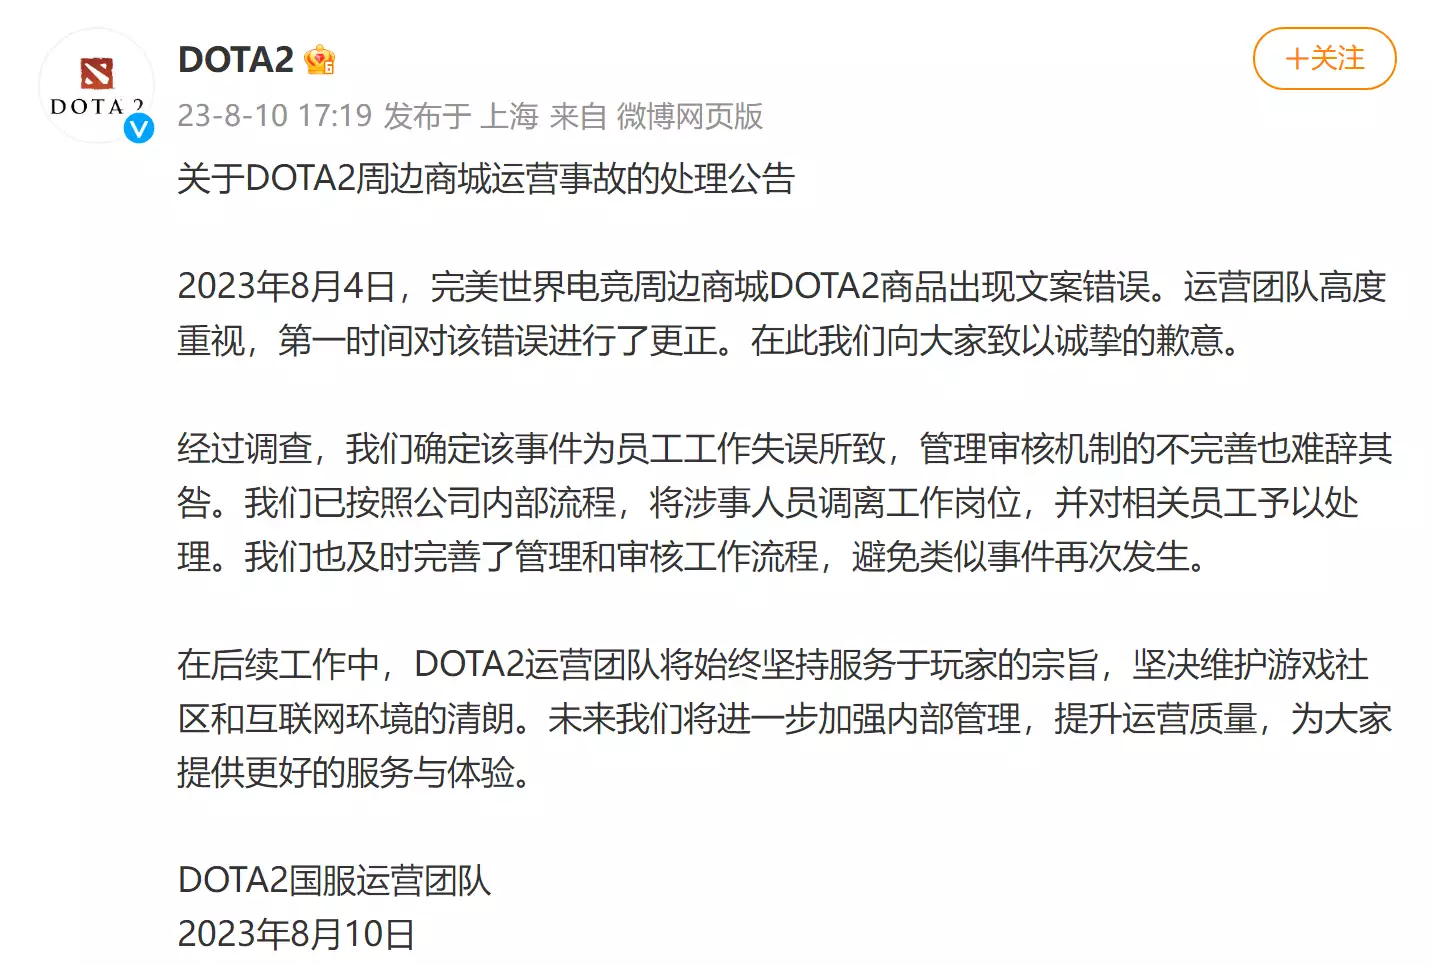 DOTA2发布周边商城运营事故的处理公告：已将涉事